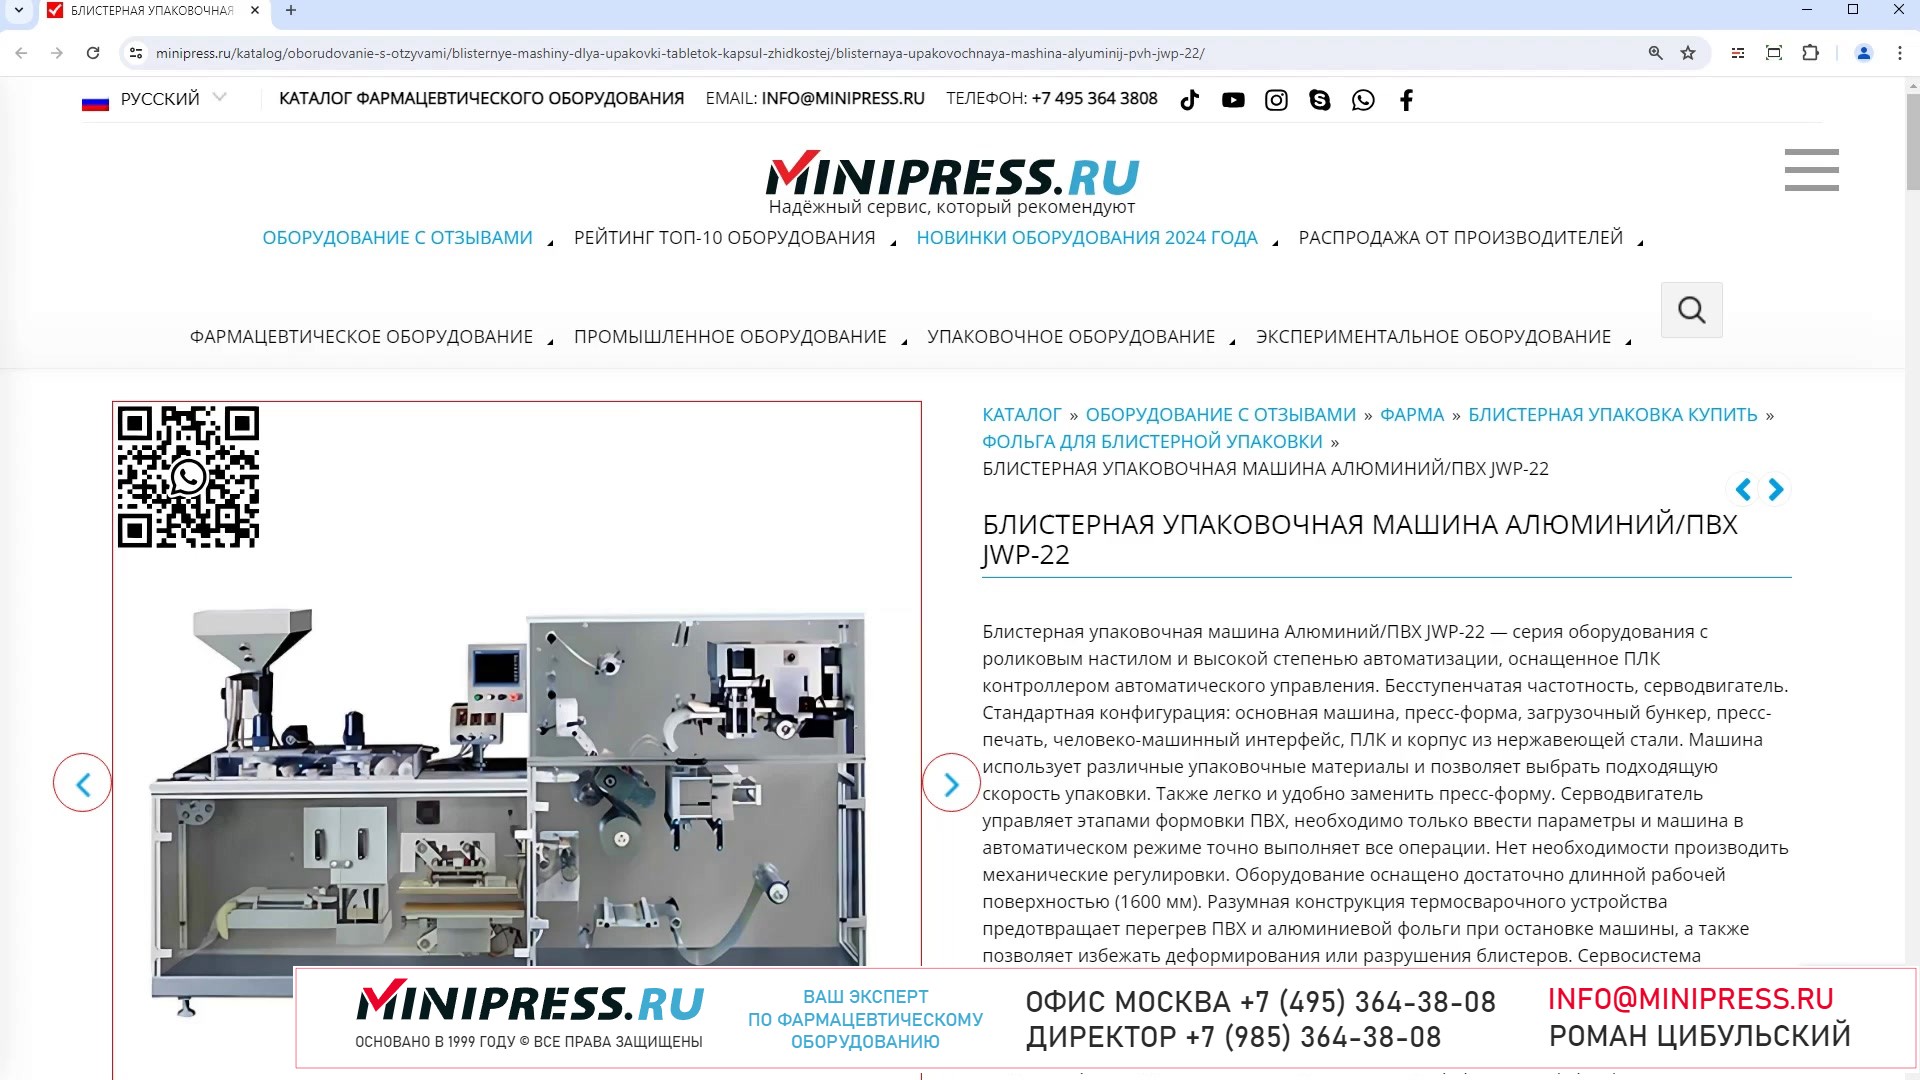 Minipress.ru Блистерная упаковочная машина АлюминийПВХ JWP-22